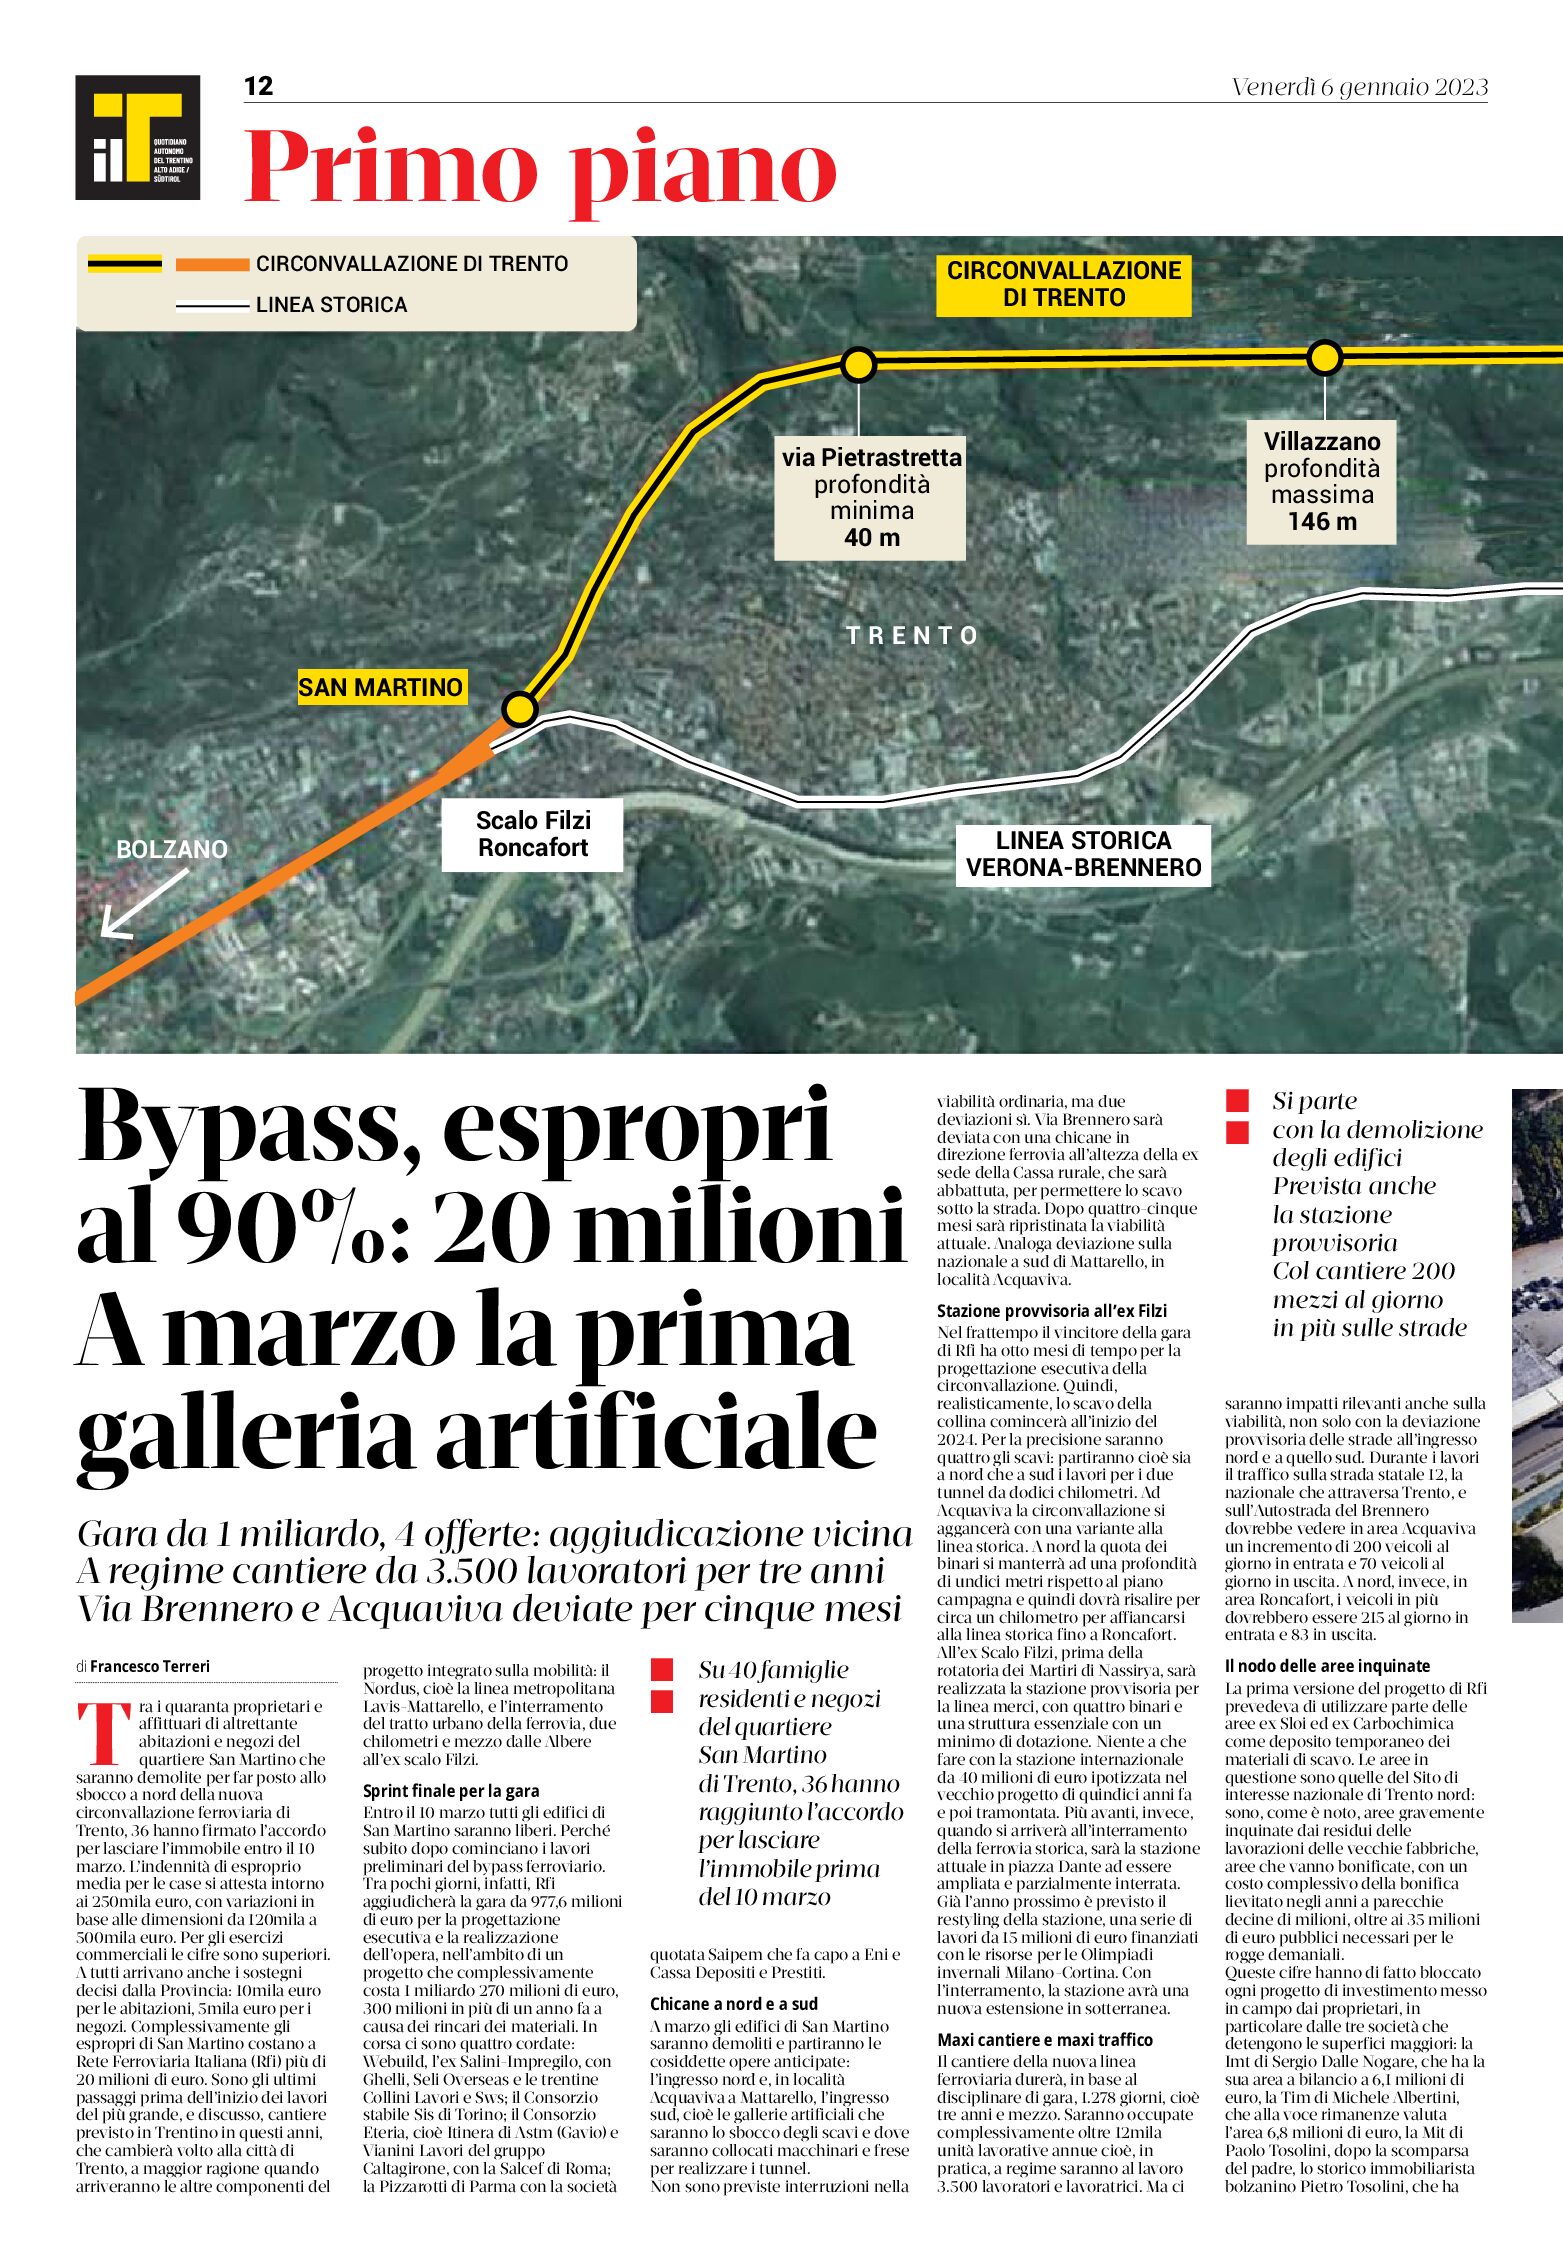 Trento, bypass ferroviario: espropri al 90%. A marzo la prima galleria artificiale